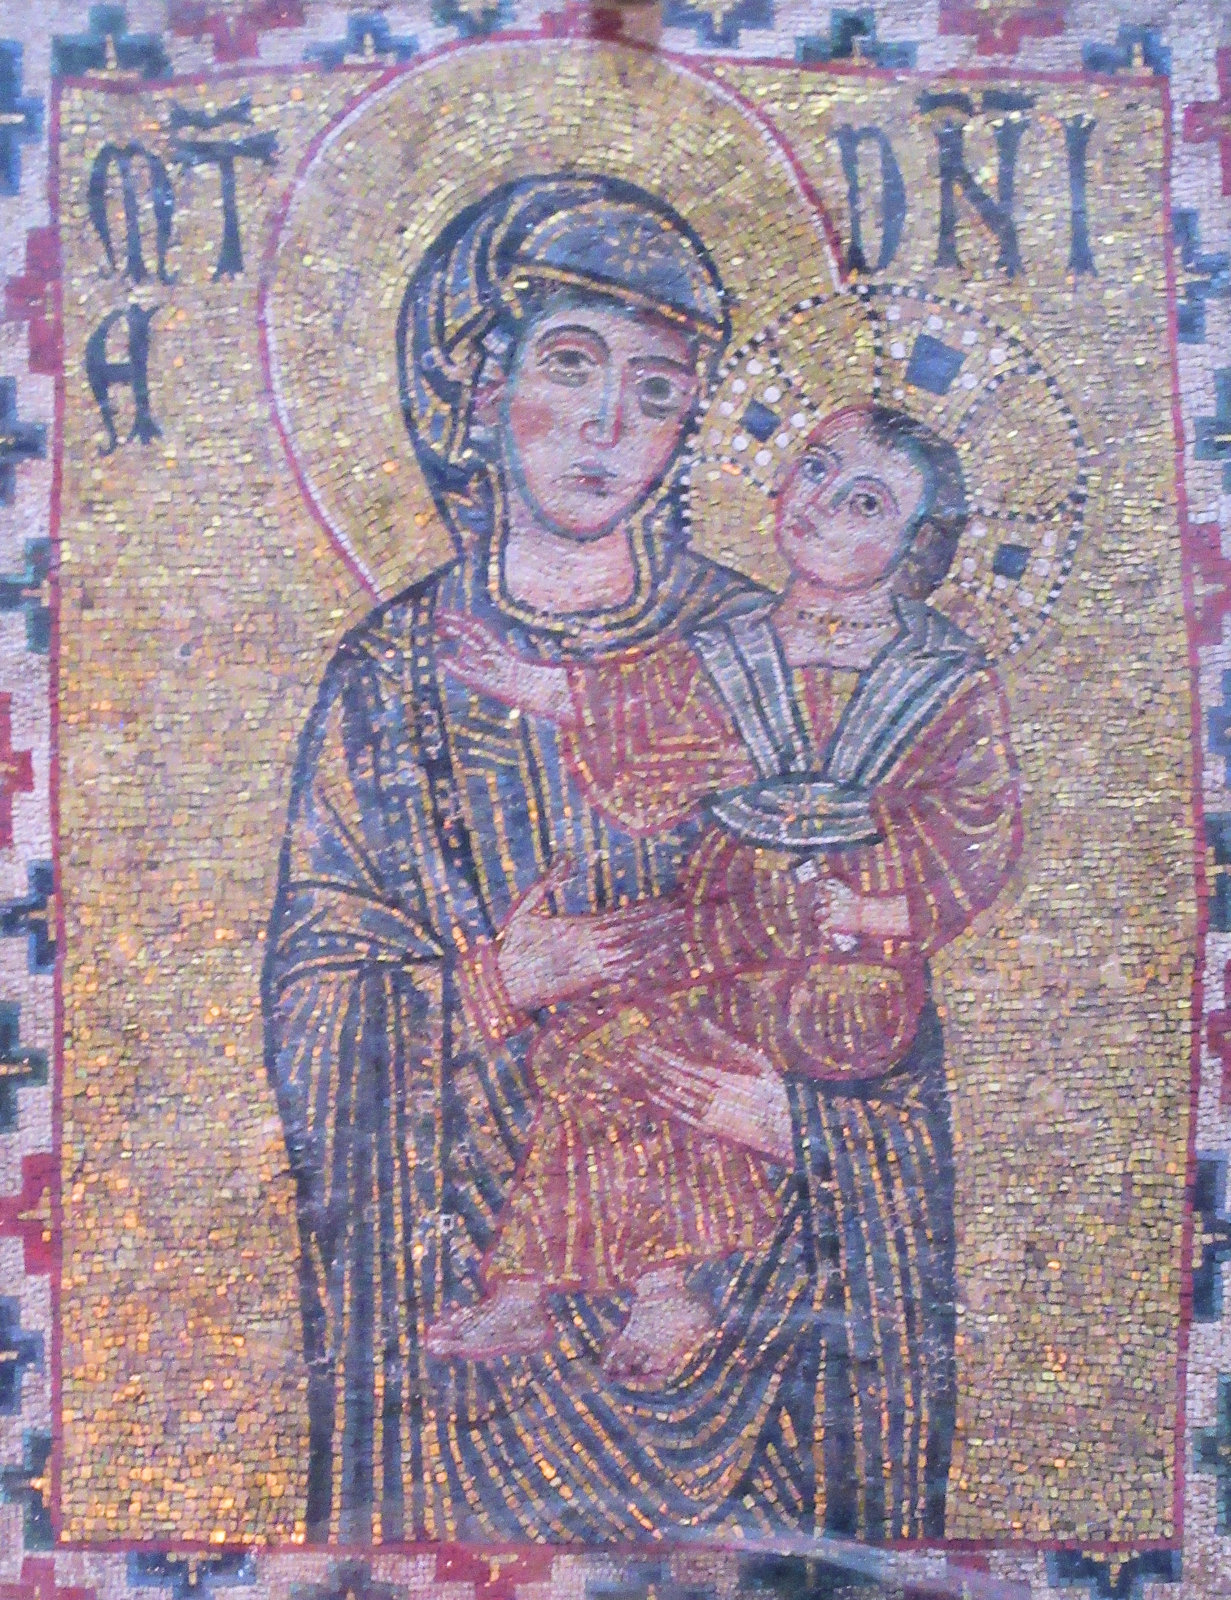 Marienikone, 13. Jahrhundert, vor der Ignatius und seine Gefährten der Überlieferung zufolge ihre Gelübde ablegten, in der Kirche San Paolo fuori le Mura in Rom